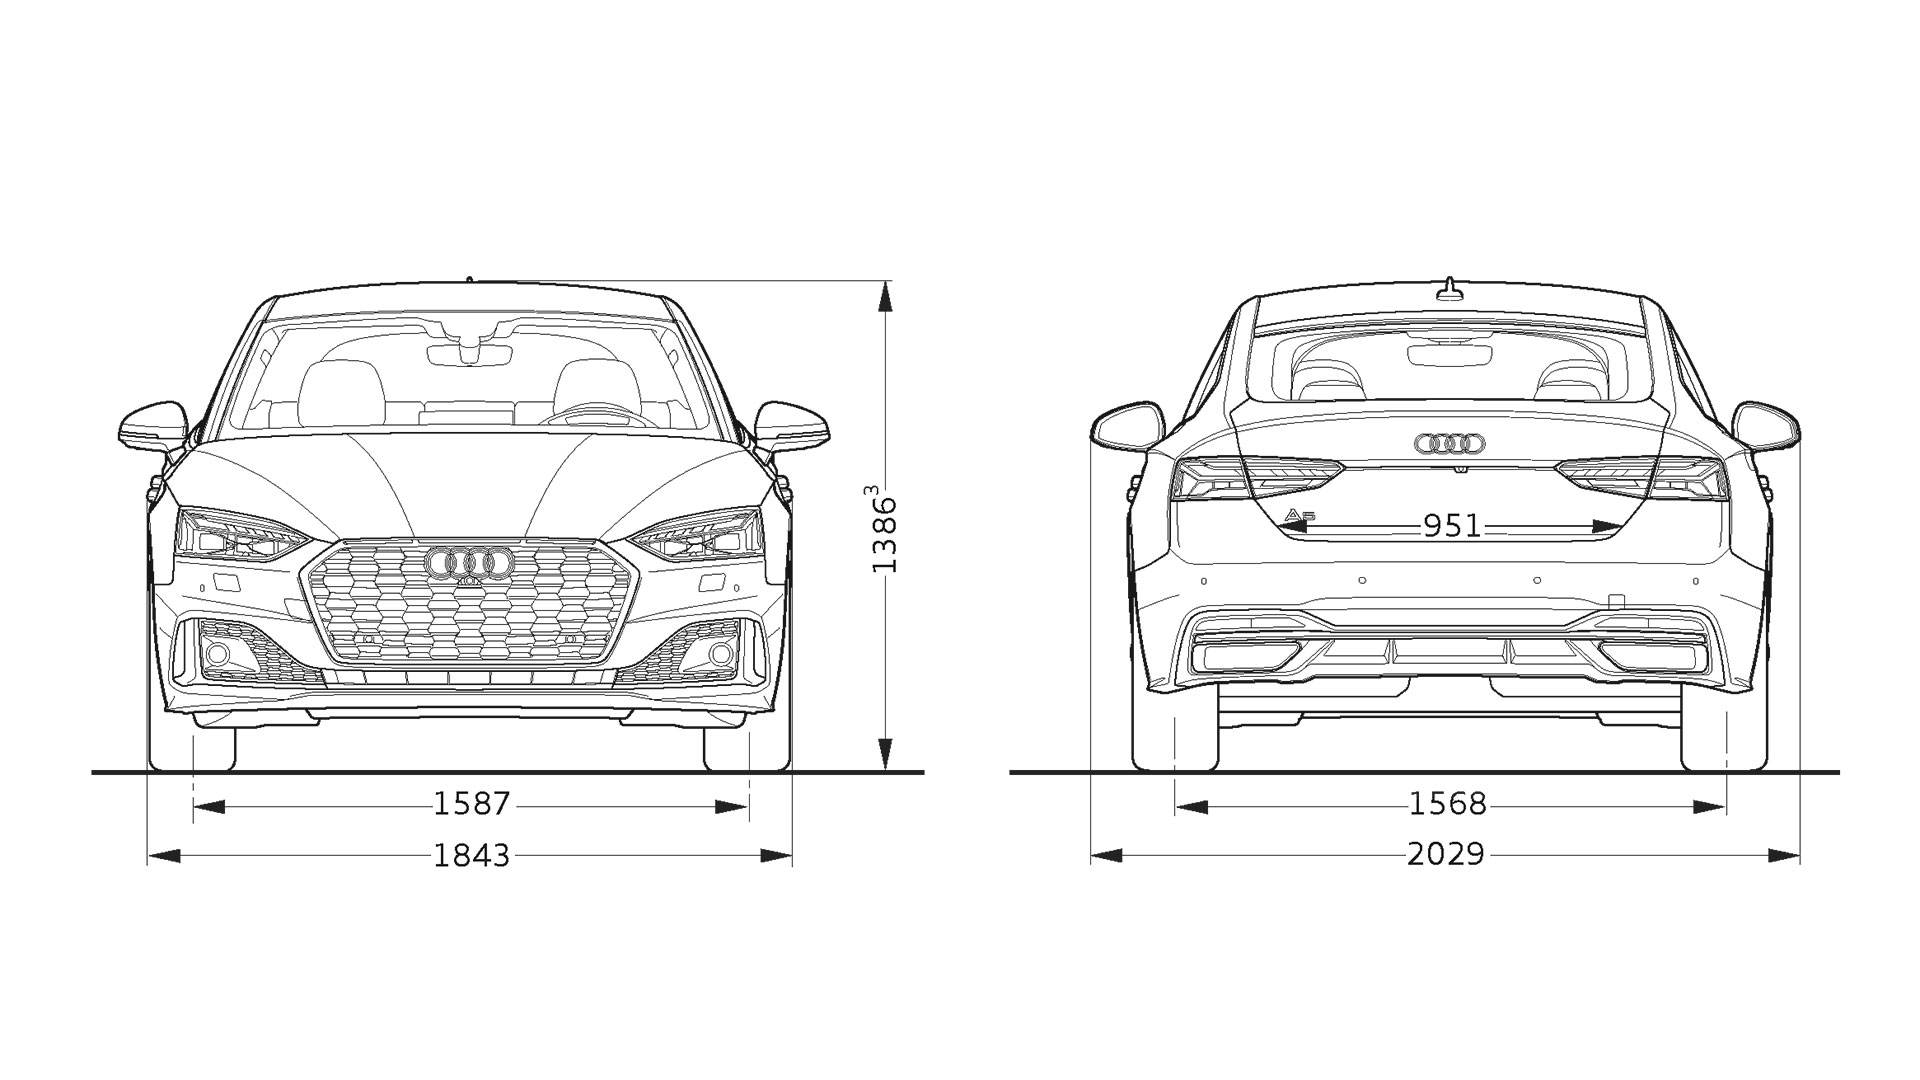 Dimensioni > A5 Sportback > Gamma Audi A5 > Audi Italia